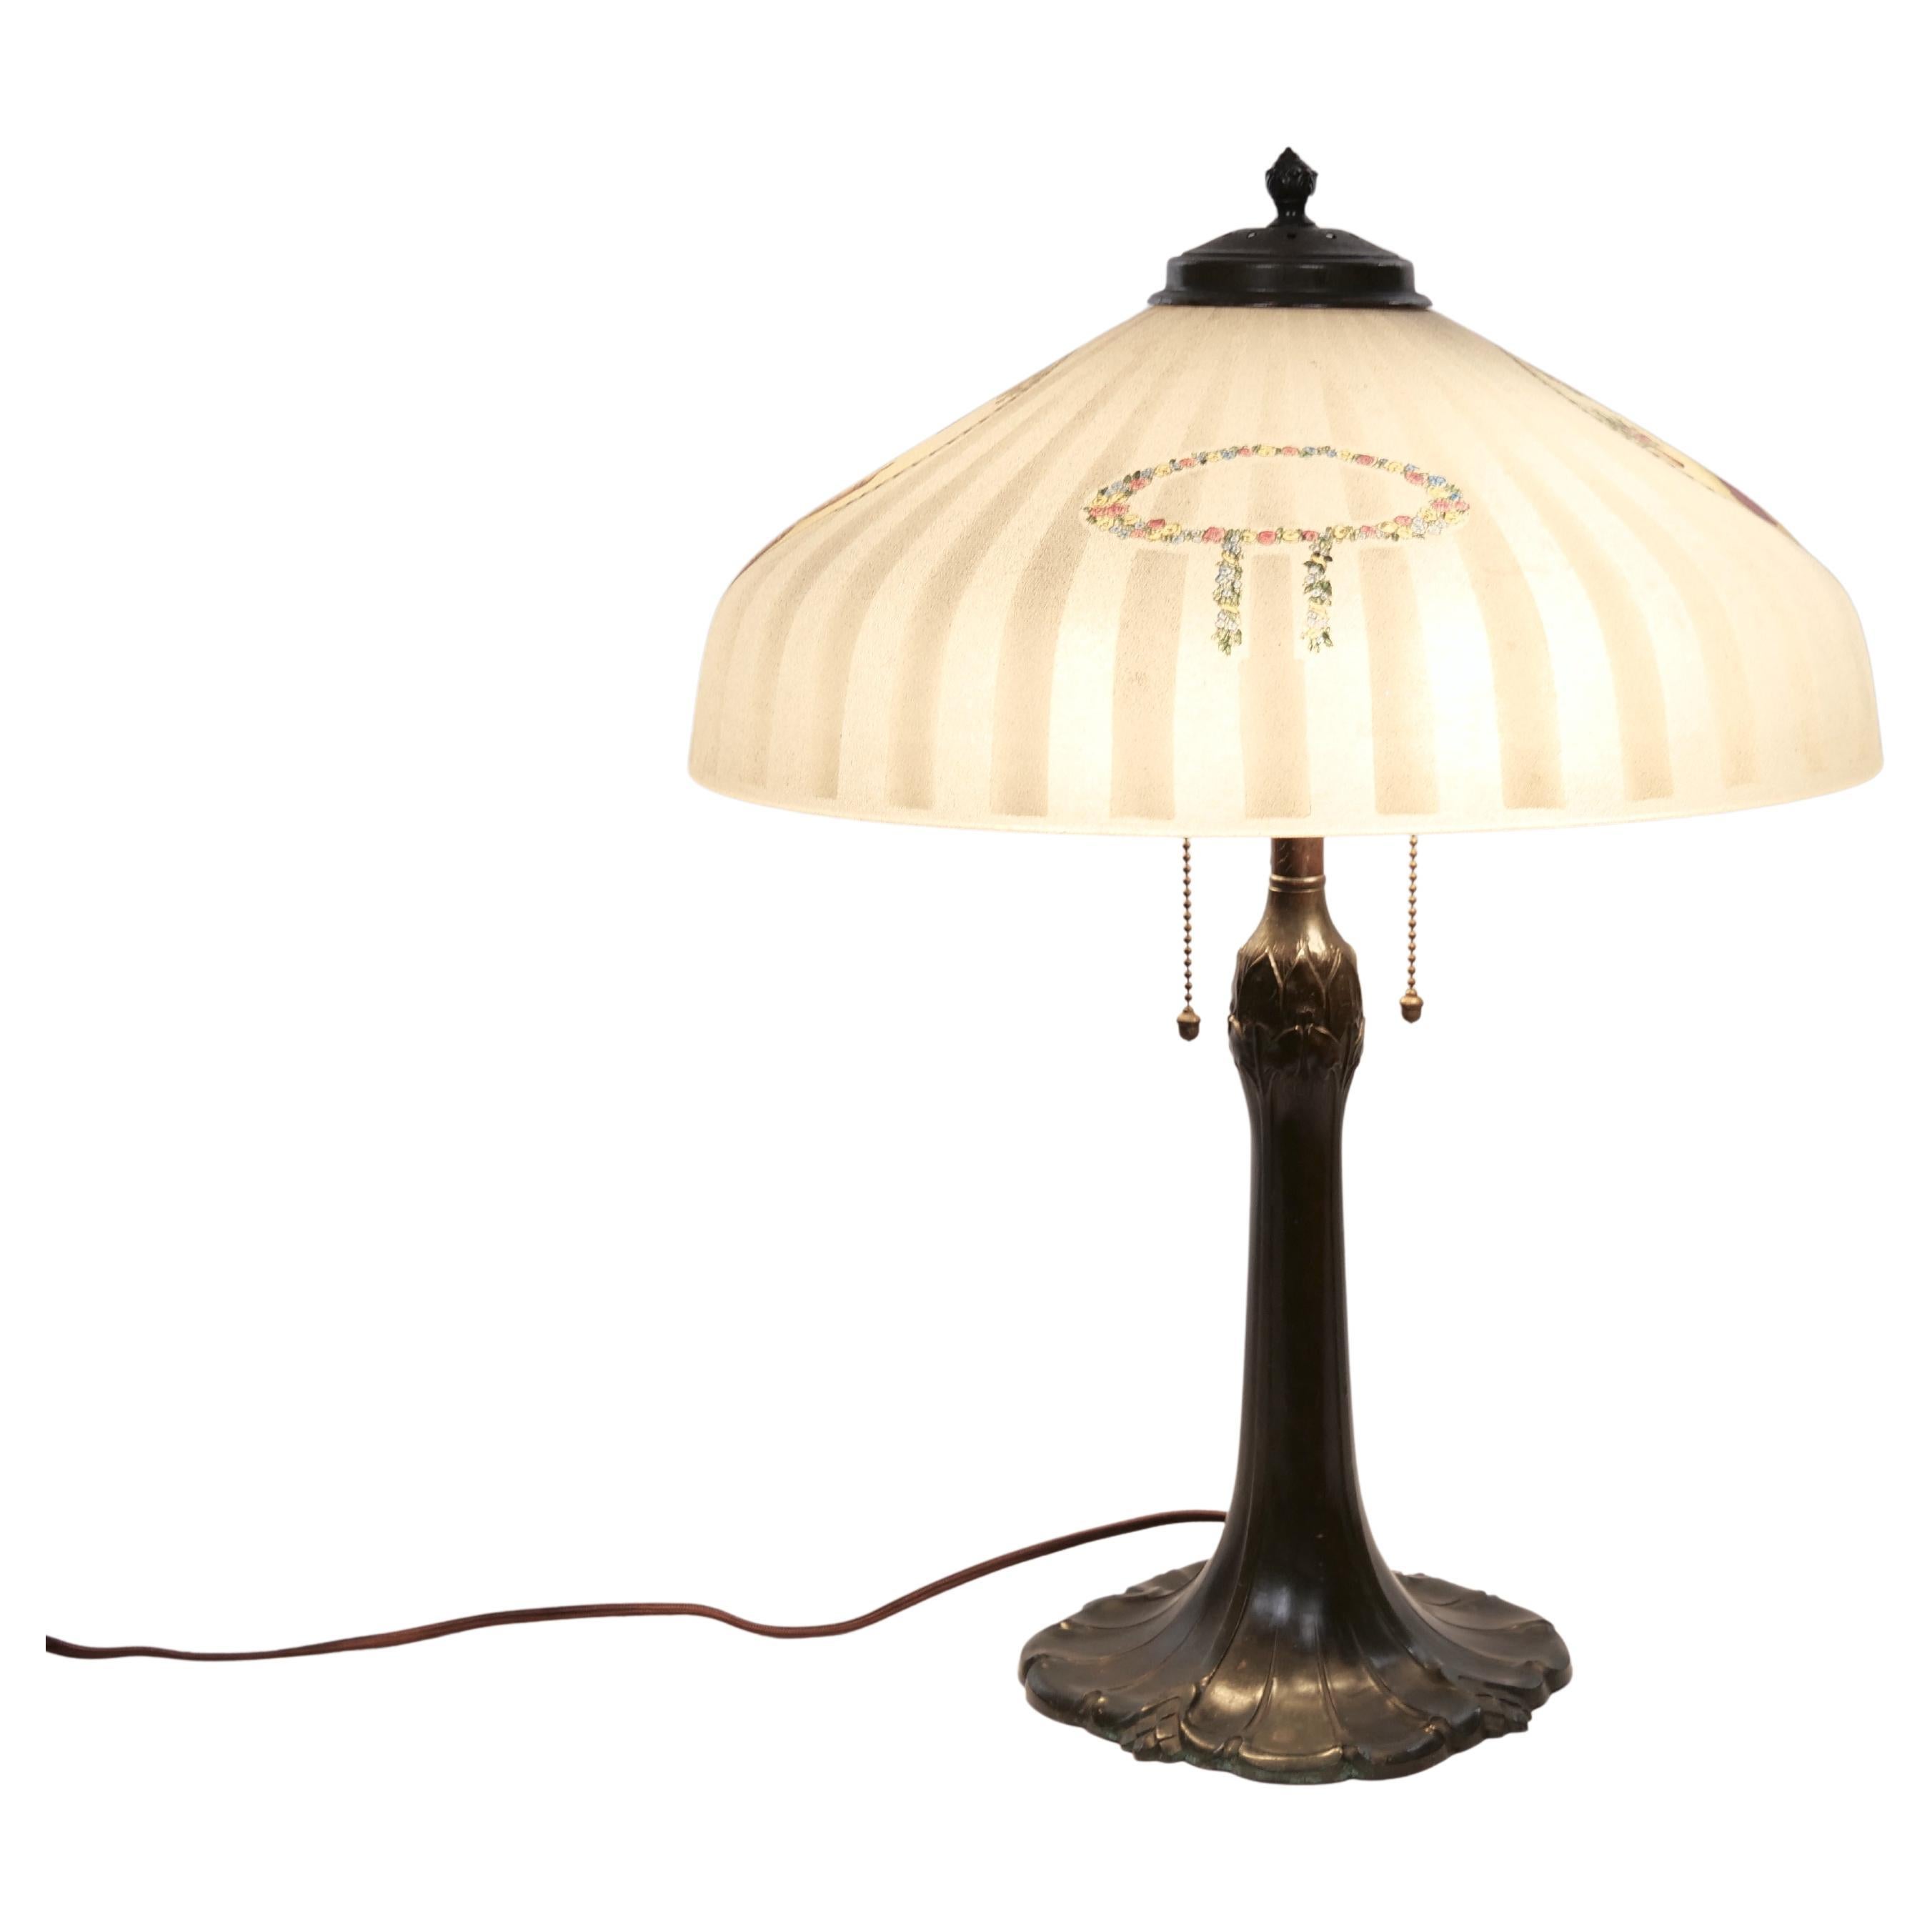 Lampe de table de la fin du 19e siècle à base de bronze / abat-jour en verre dépoli peint à la main inversé. La lampe est en bon état de fonctionnement. Usure mineure appropriée à l'âge / à l'utilisation. Il mesure 21 pouces de haut.
 